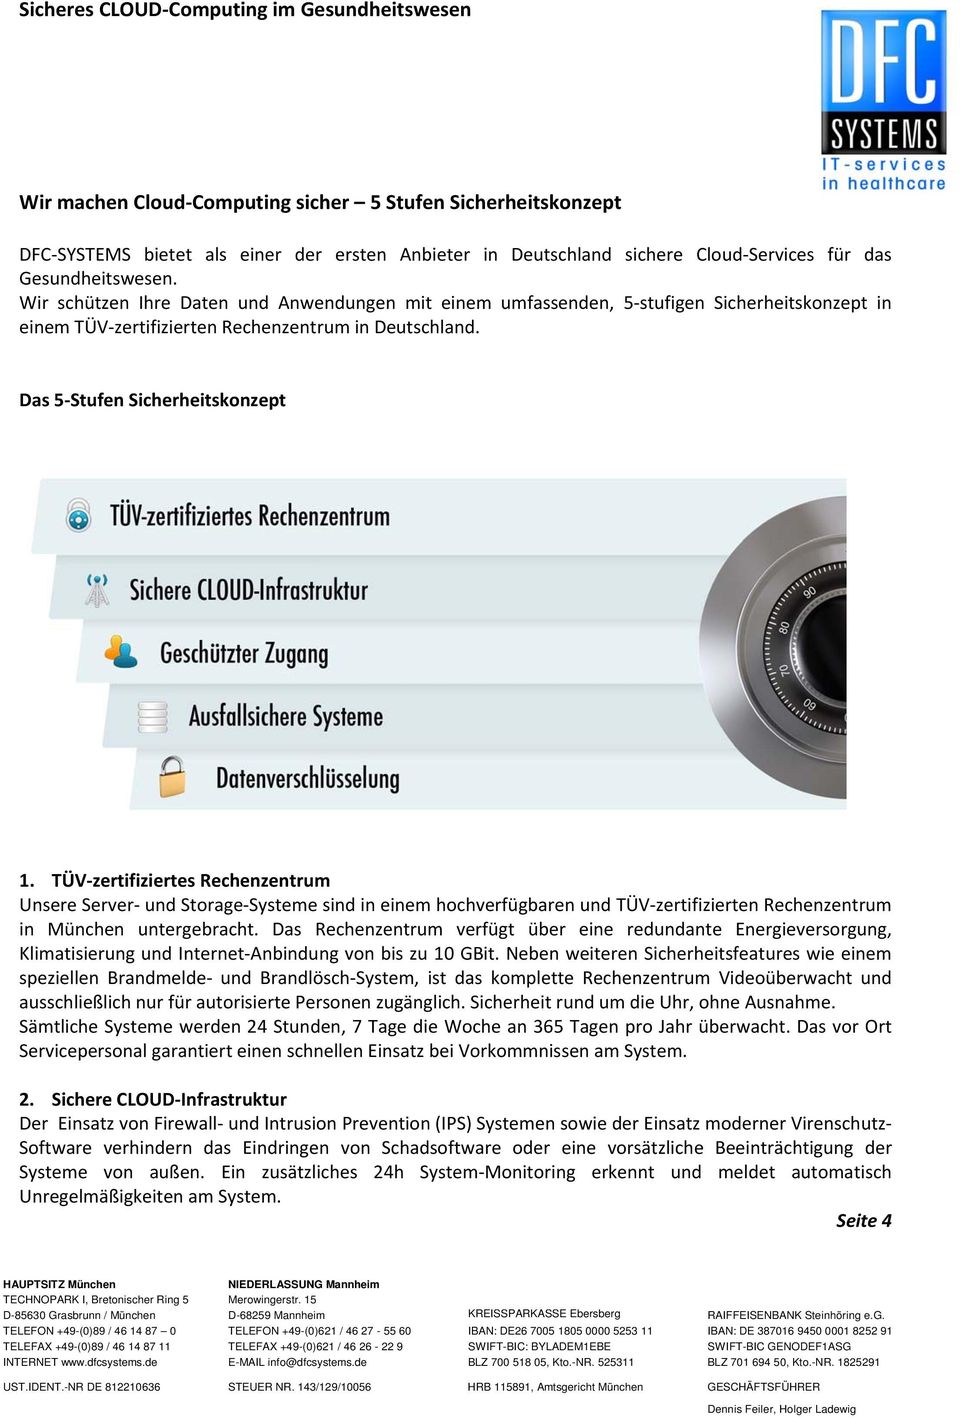 TÜV zertifiziertes Rechenzentrum Unsere Server und Storage Systeme sind in einem hochverfügbaren und TÜV zertifizierten Rechenzentrum in München untergebracht.